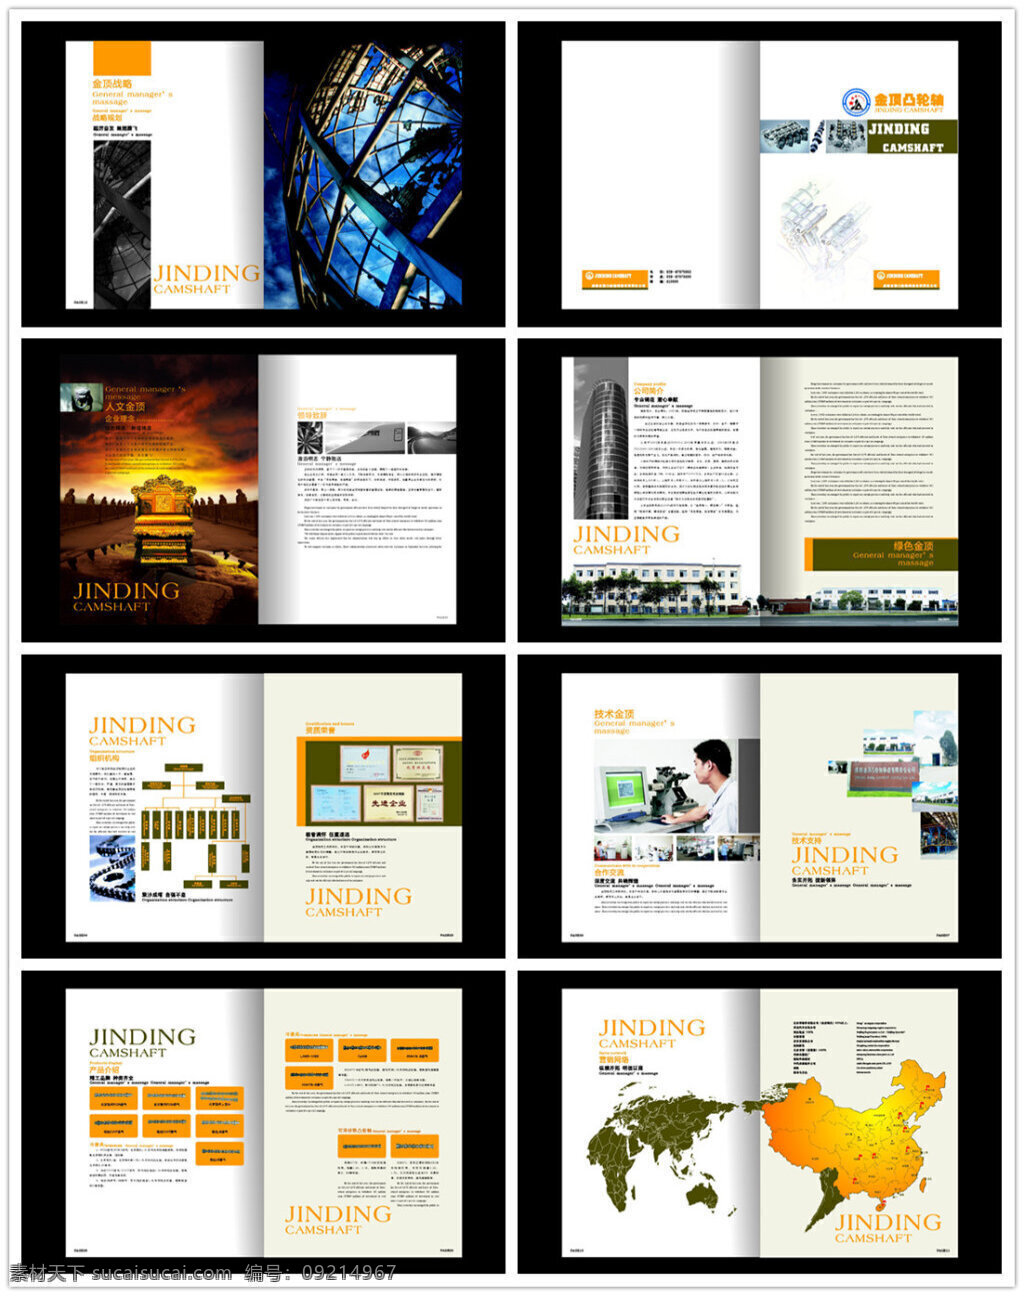 金顶 轮轴 公司 画册 企业画册 画册设计 公司画册 cdr素材 画册素材 公司介绍 企业宣传画册 宣传册